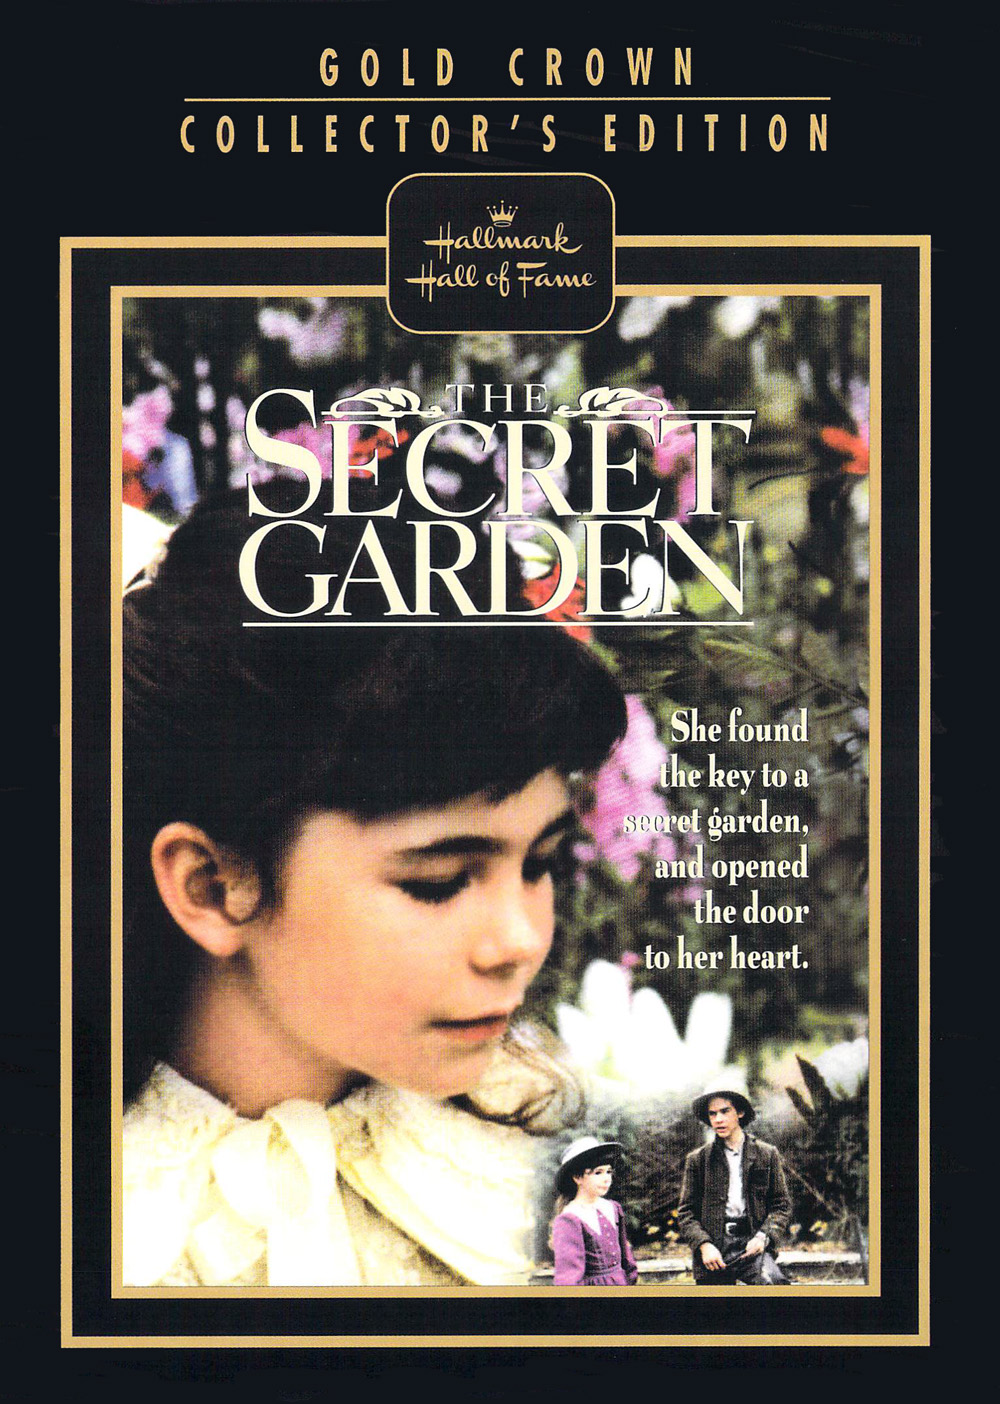 The Secret Garden 1987 New Sealed Dvd 15012723779 Ebay